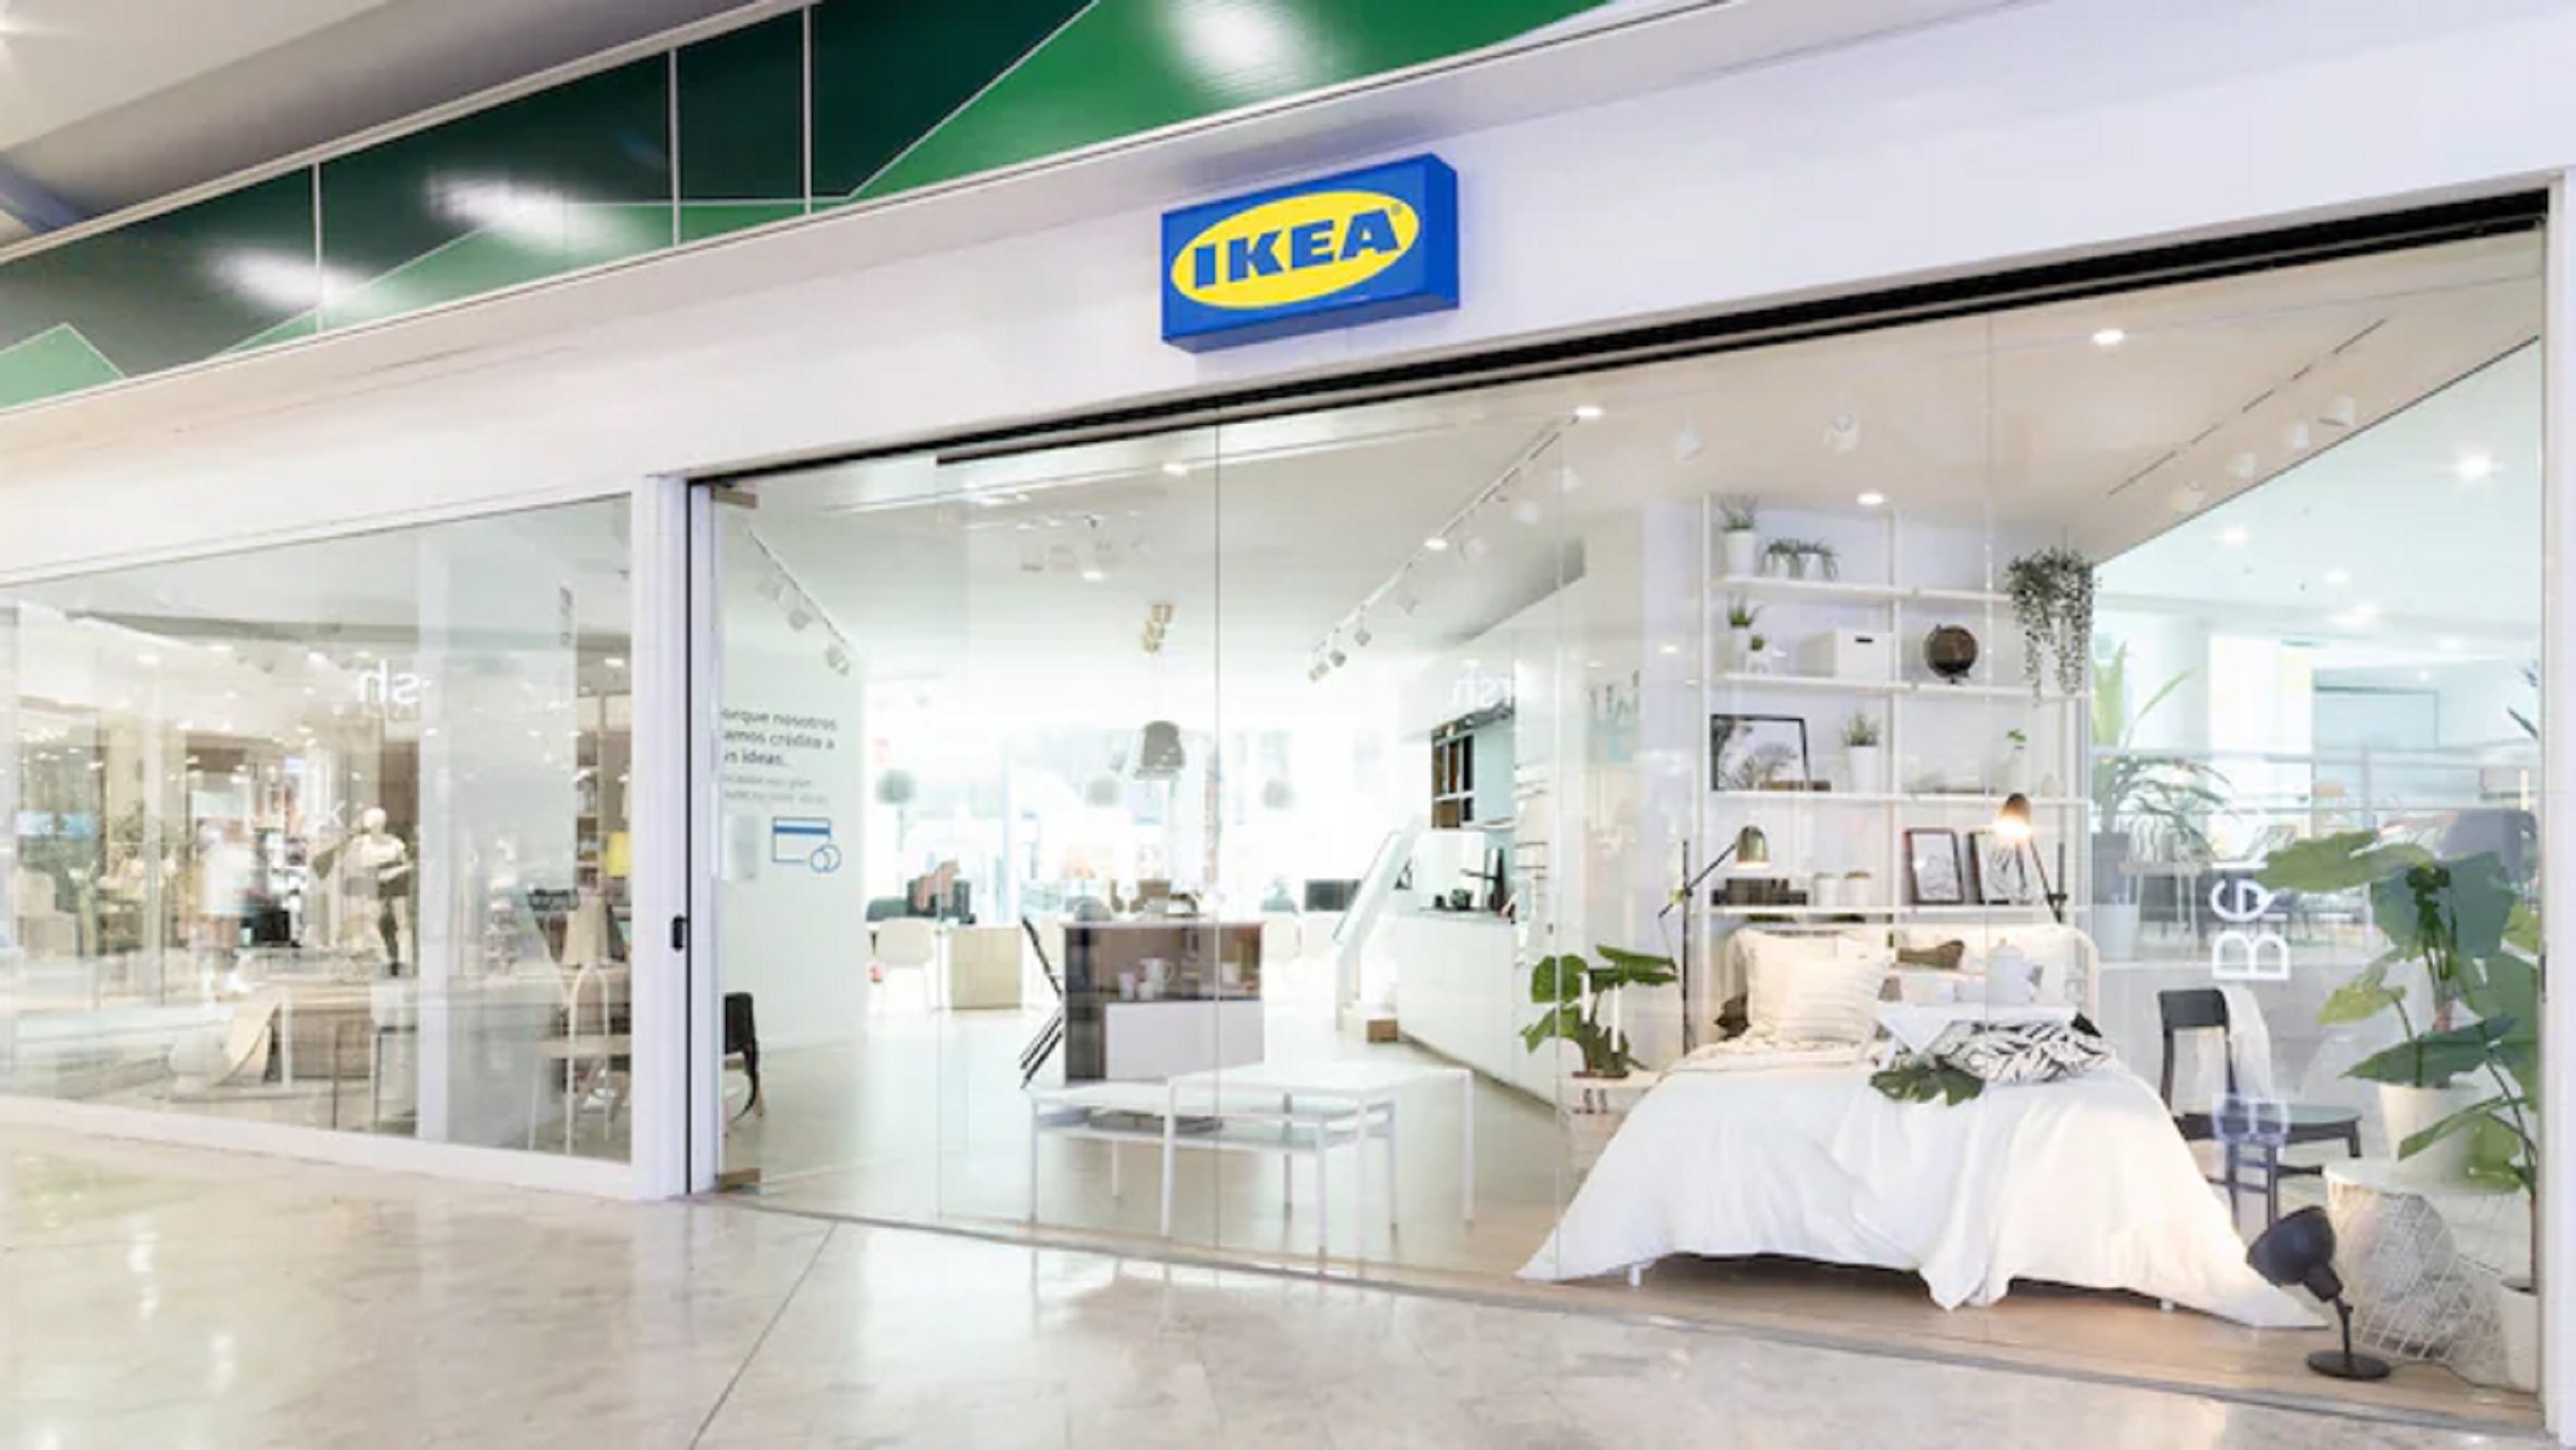 Costa 9 euros i és la solució d'Ikea més barata per tenir tota la roba ordenada